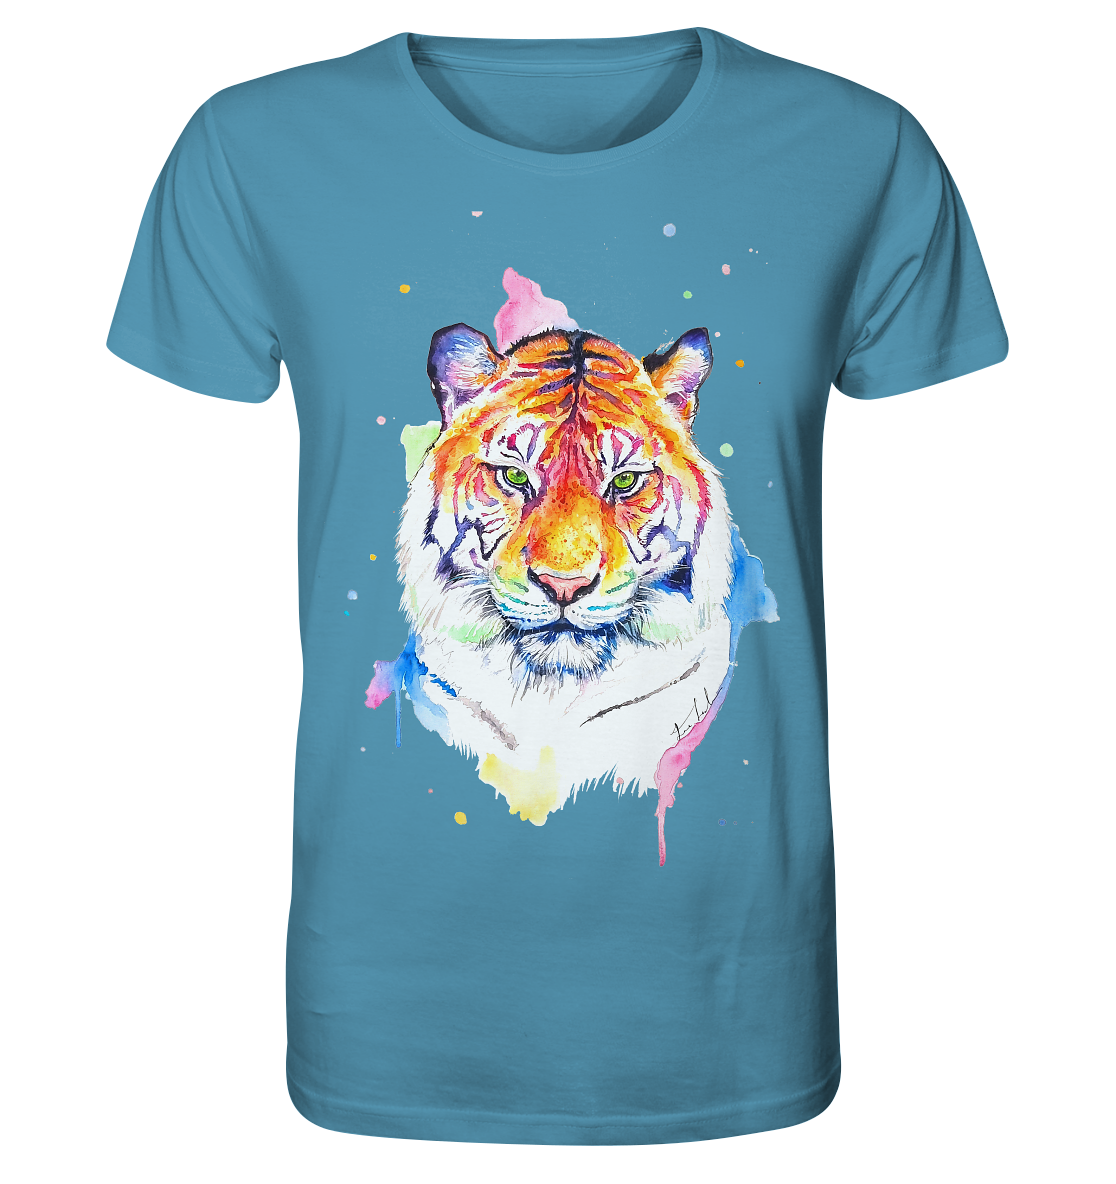 Bunter Tiger - Organic Shirt